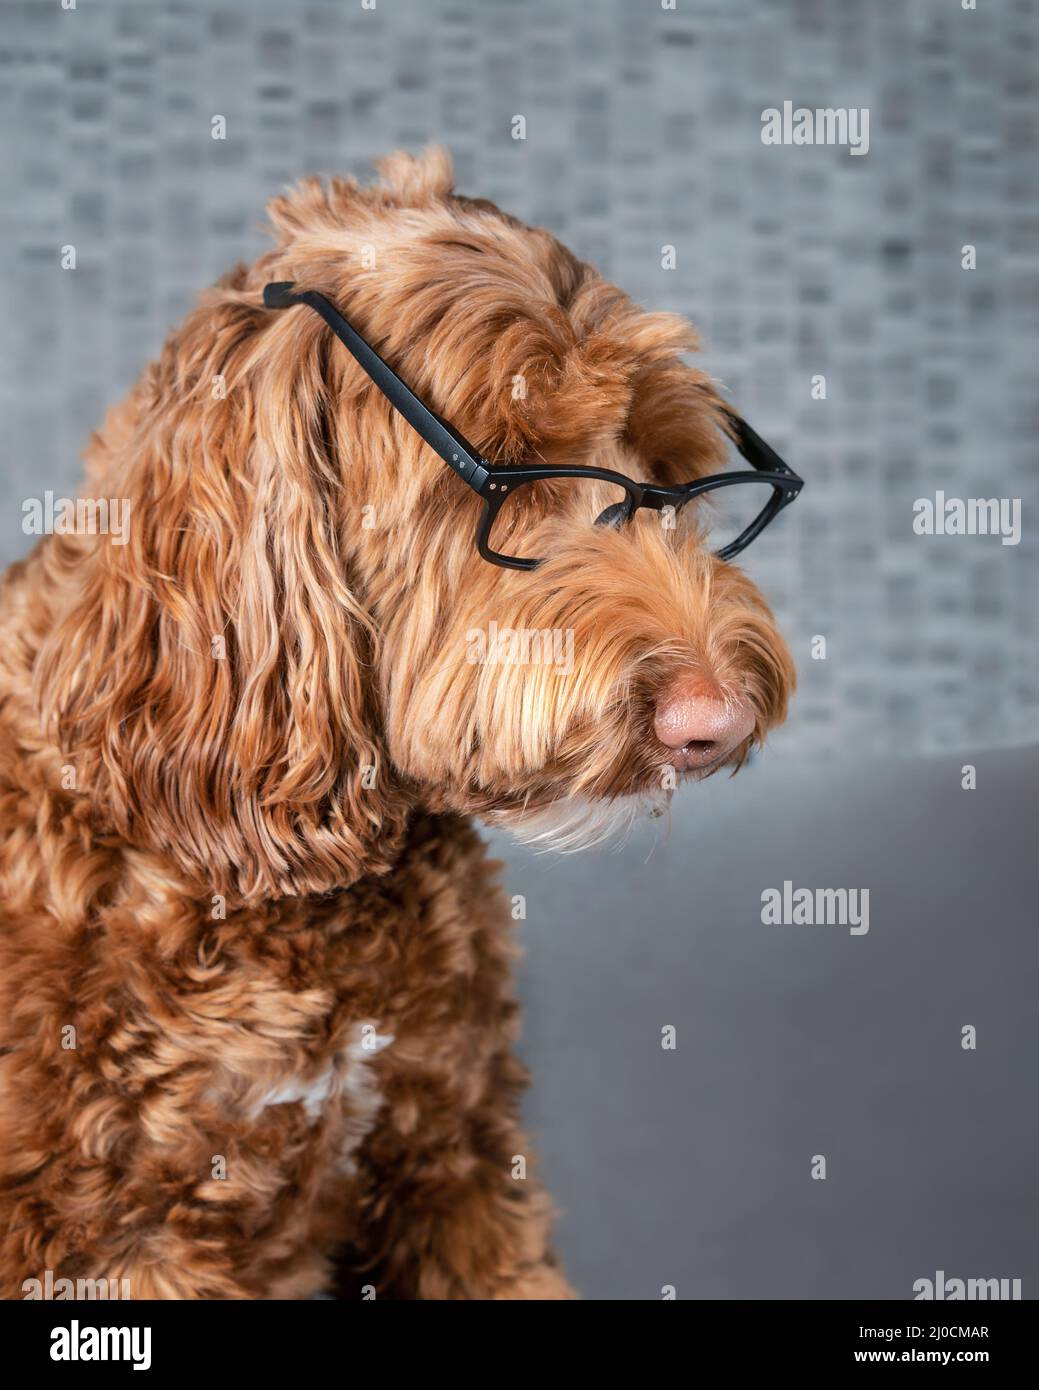 Gafas de perro nerdy, perfil lateral. Perro grande y esponjoso de Labradoodle femenino mirando con expresión seria a algo. Divertido concepto para mascotas inteligentes Foto de stock